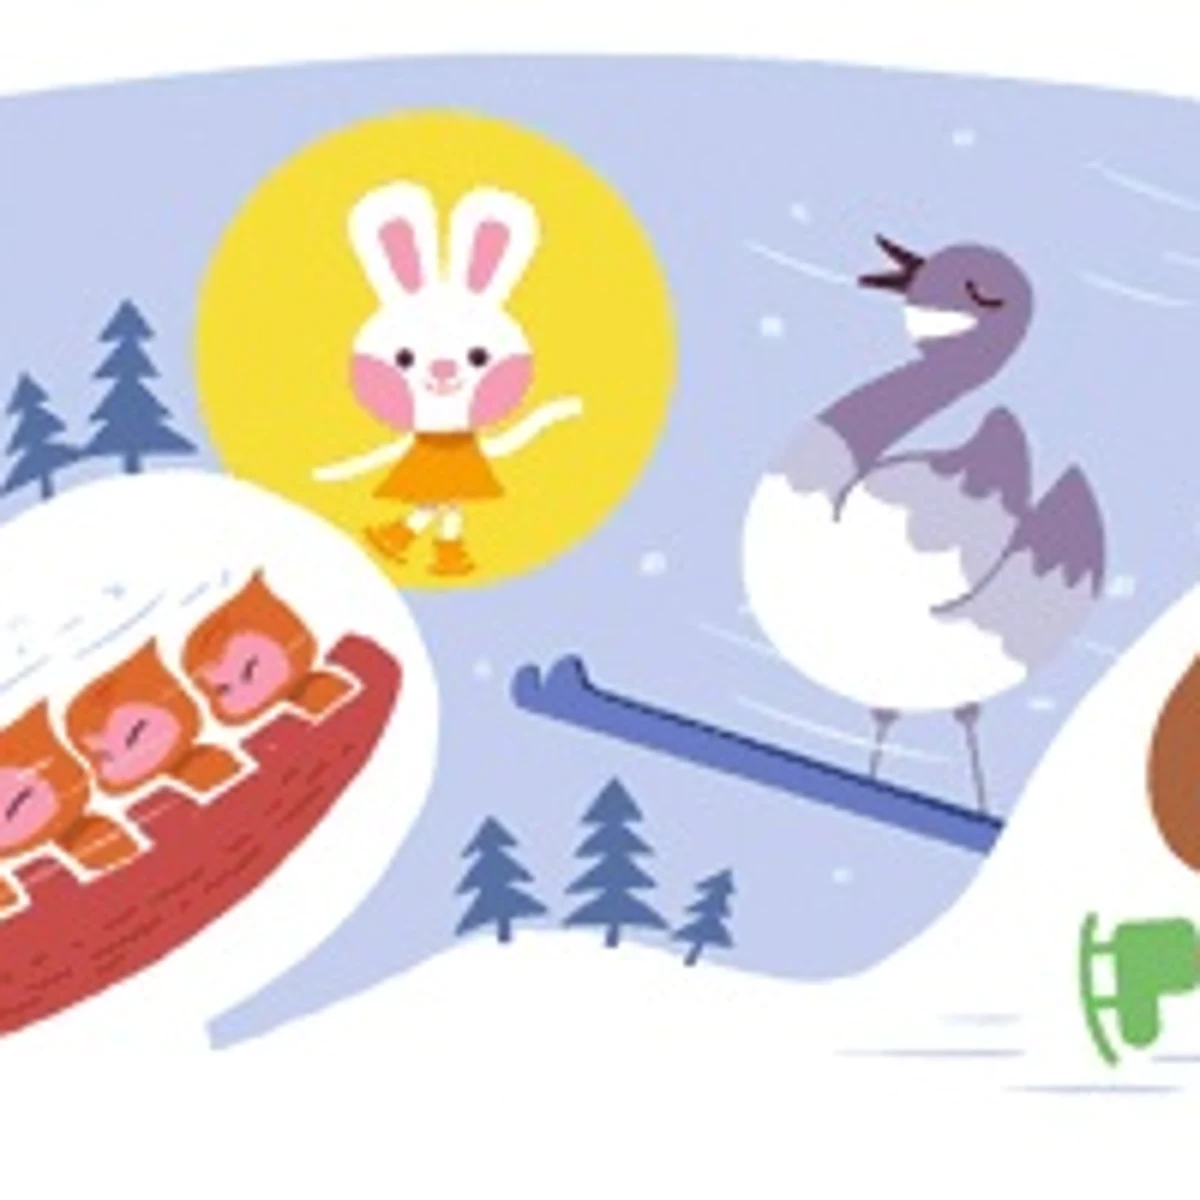 Google assinala o início dos Jogos Olímpicos de Inverno 2022 com o doodle.